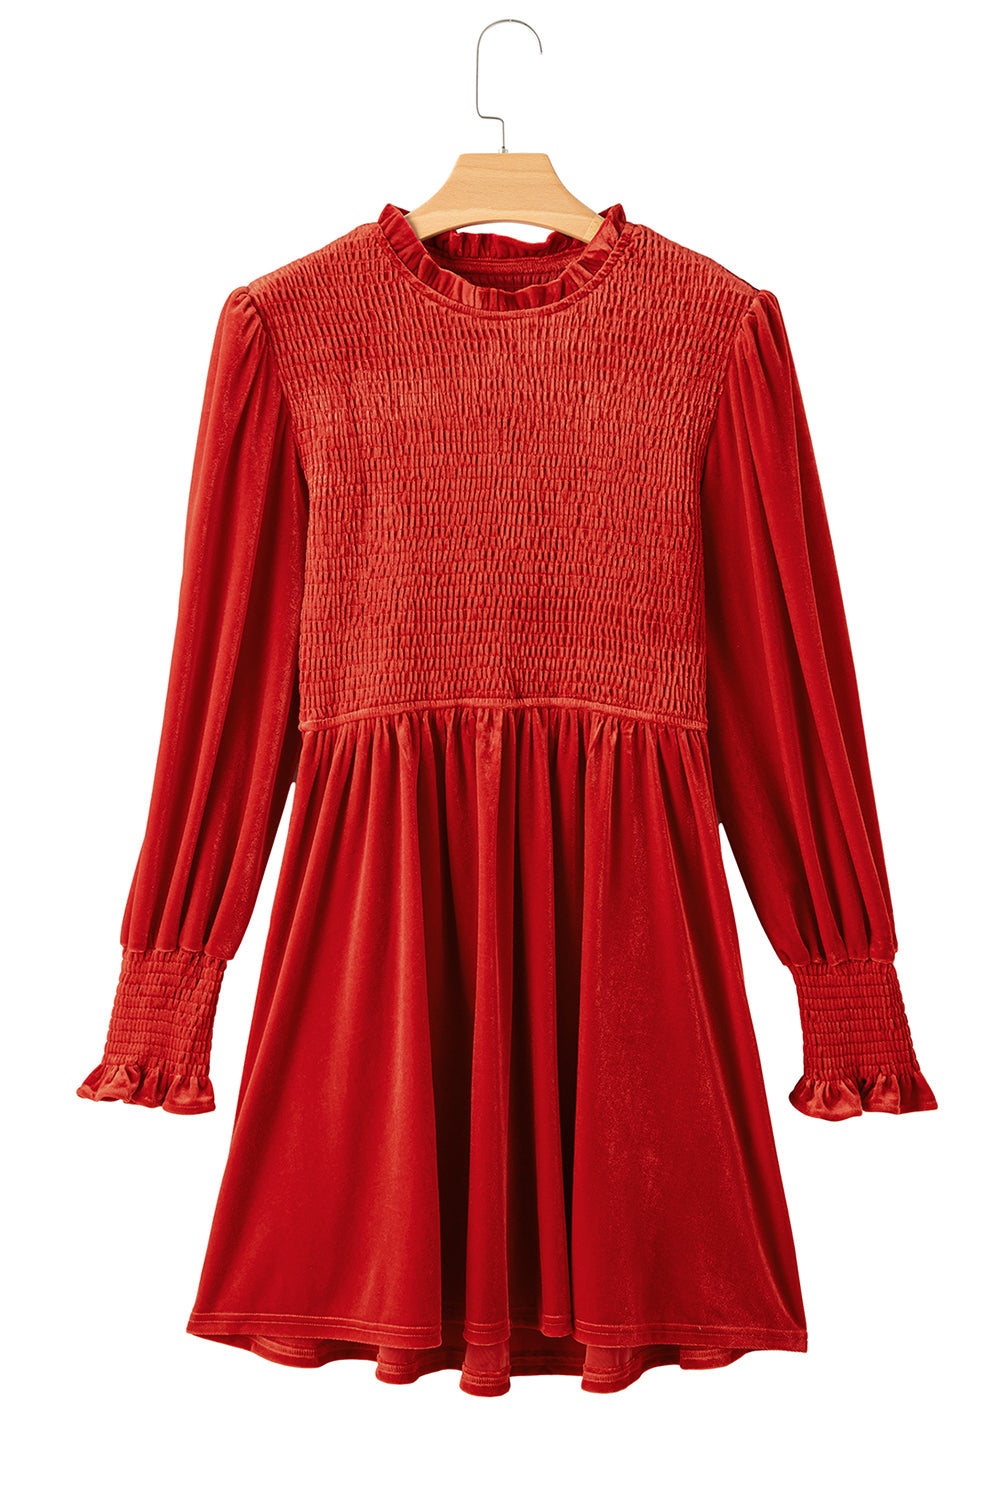 Red Clay Frilled Neck Smocked Bodice Velvet Dress